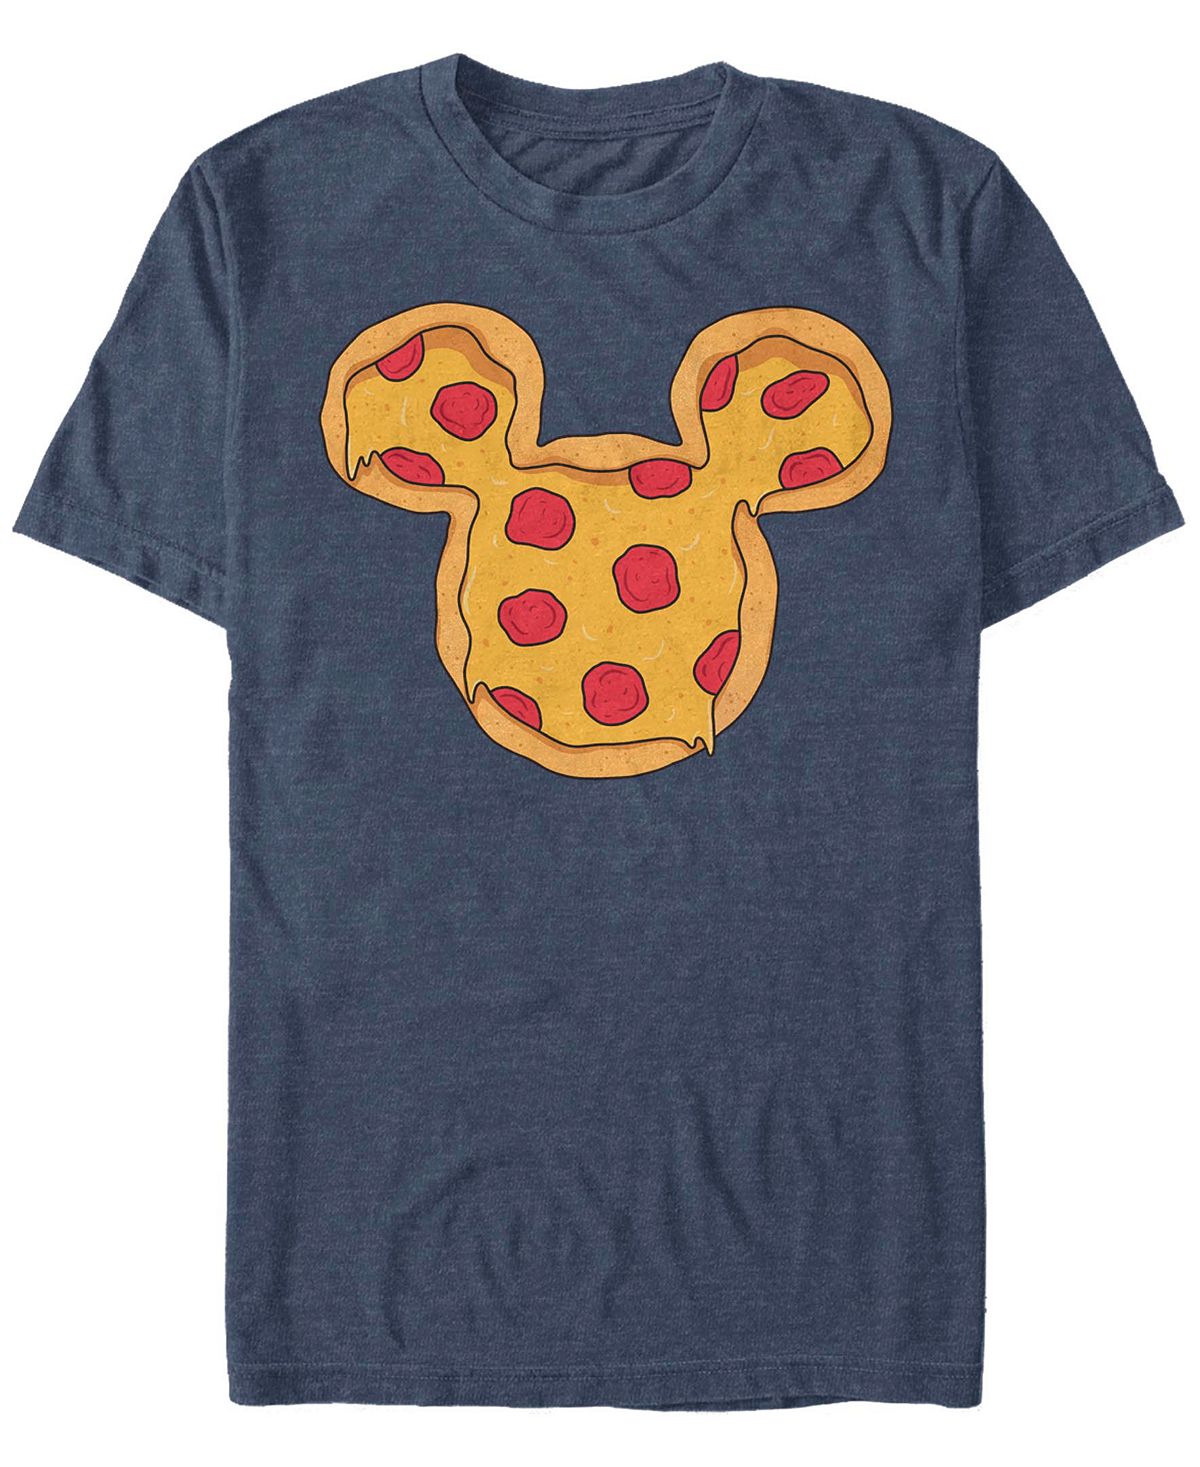 Мужская футболка с короткими рукавами mickey pizza ears Fifth Sun, синий